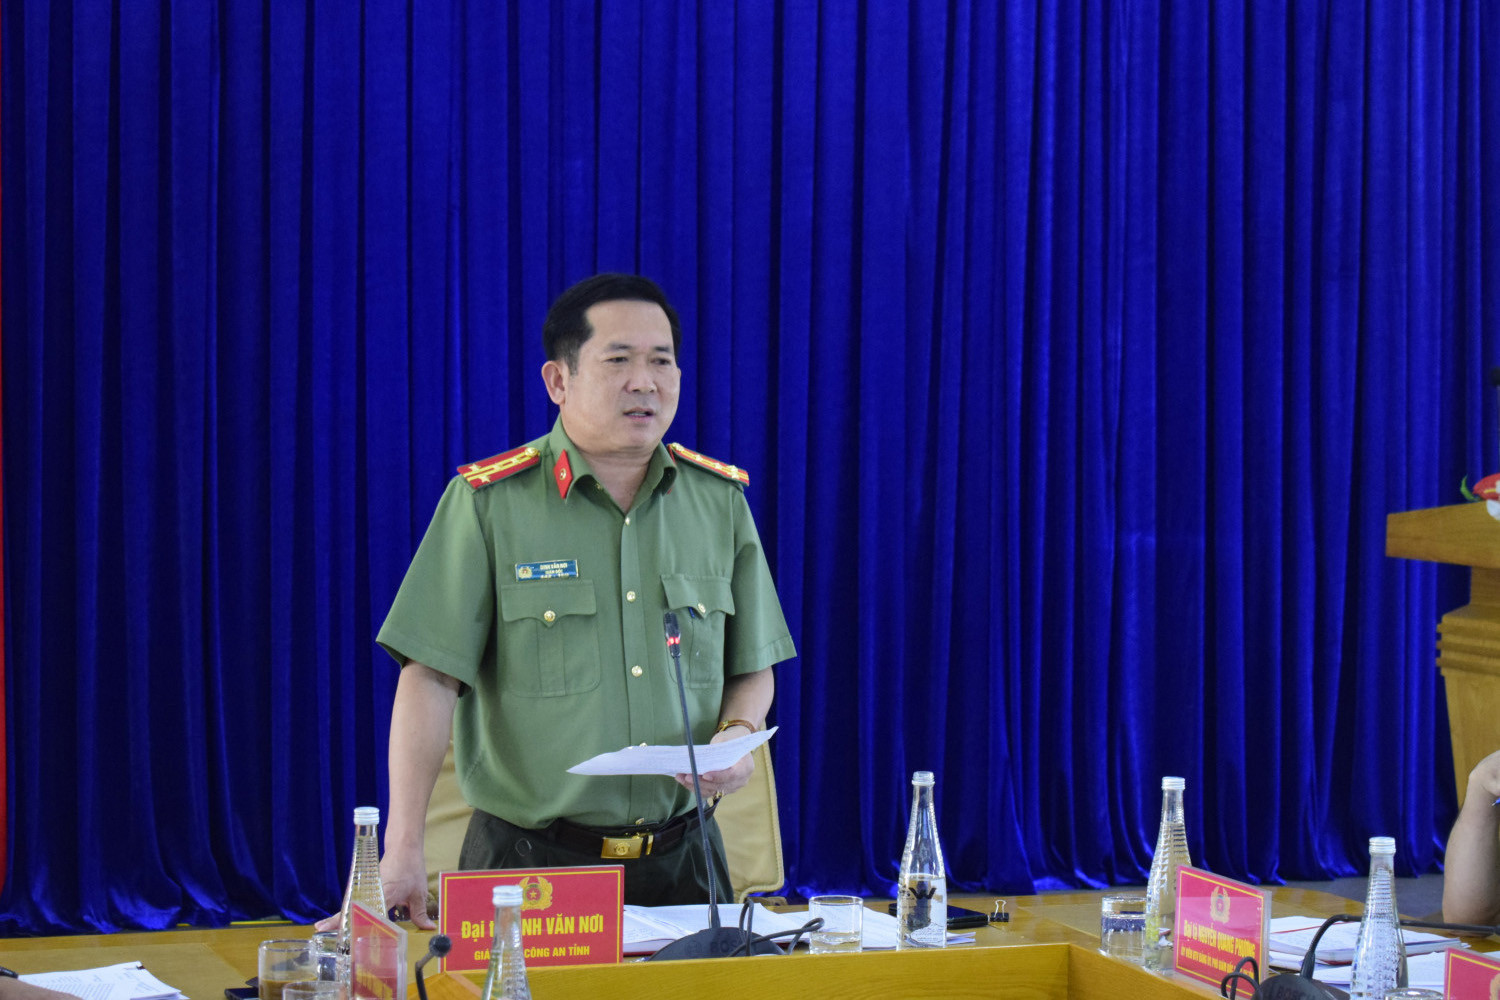 Hoạt động đầu tiên của ông Đinh Văn Nơi khi làm Giám đốc Công an Quảng Ninh